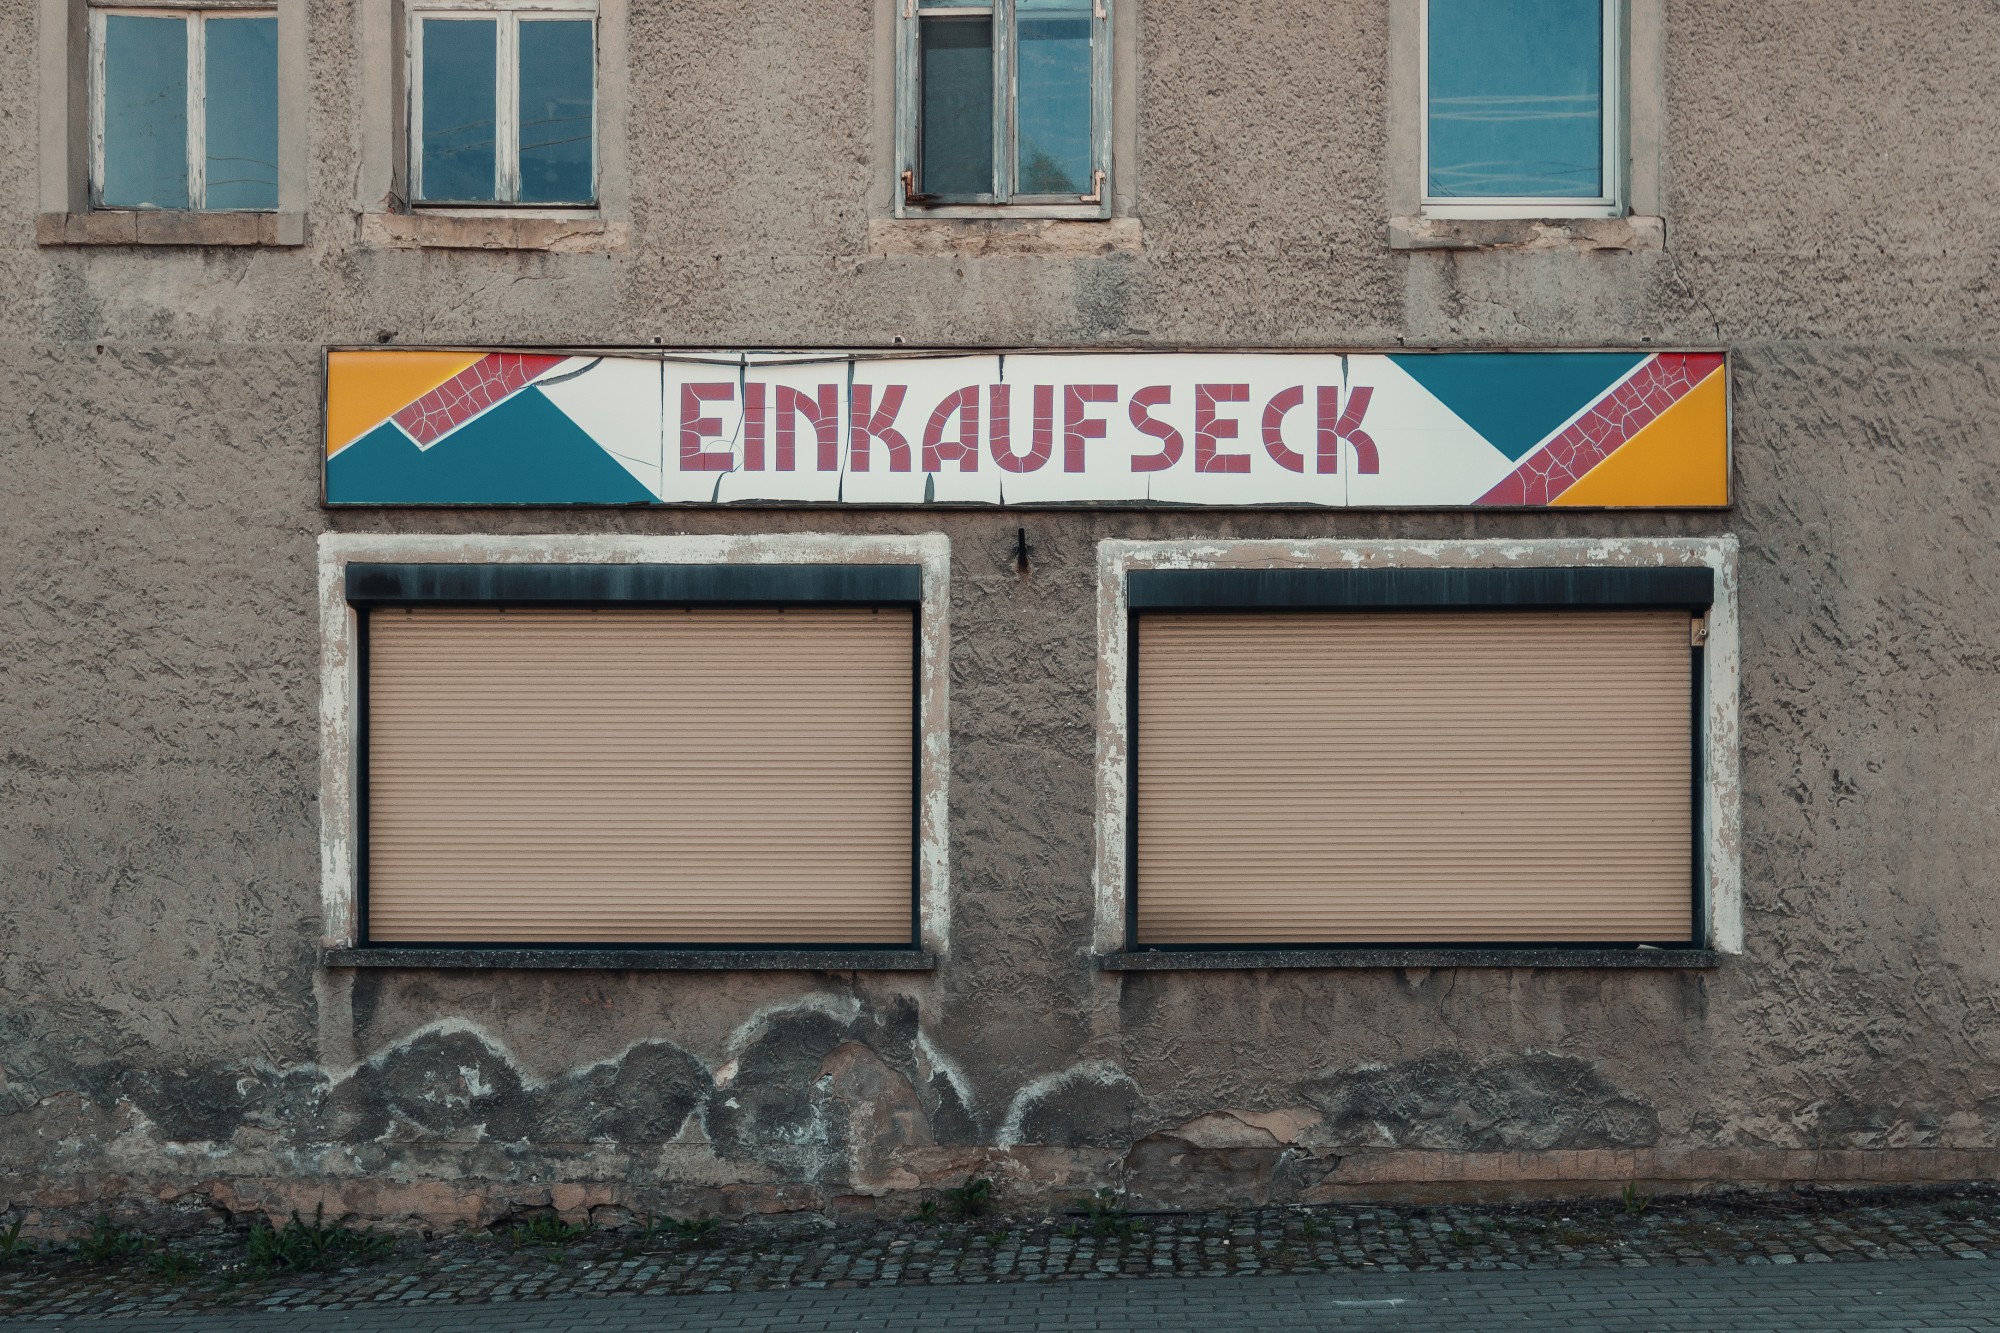 braune Hausfront mit buntem Typografieschild, Einkaufseck